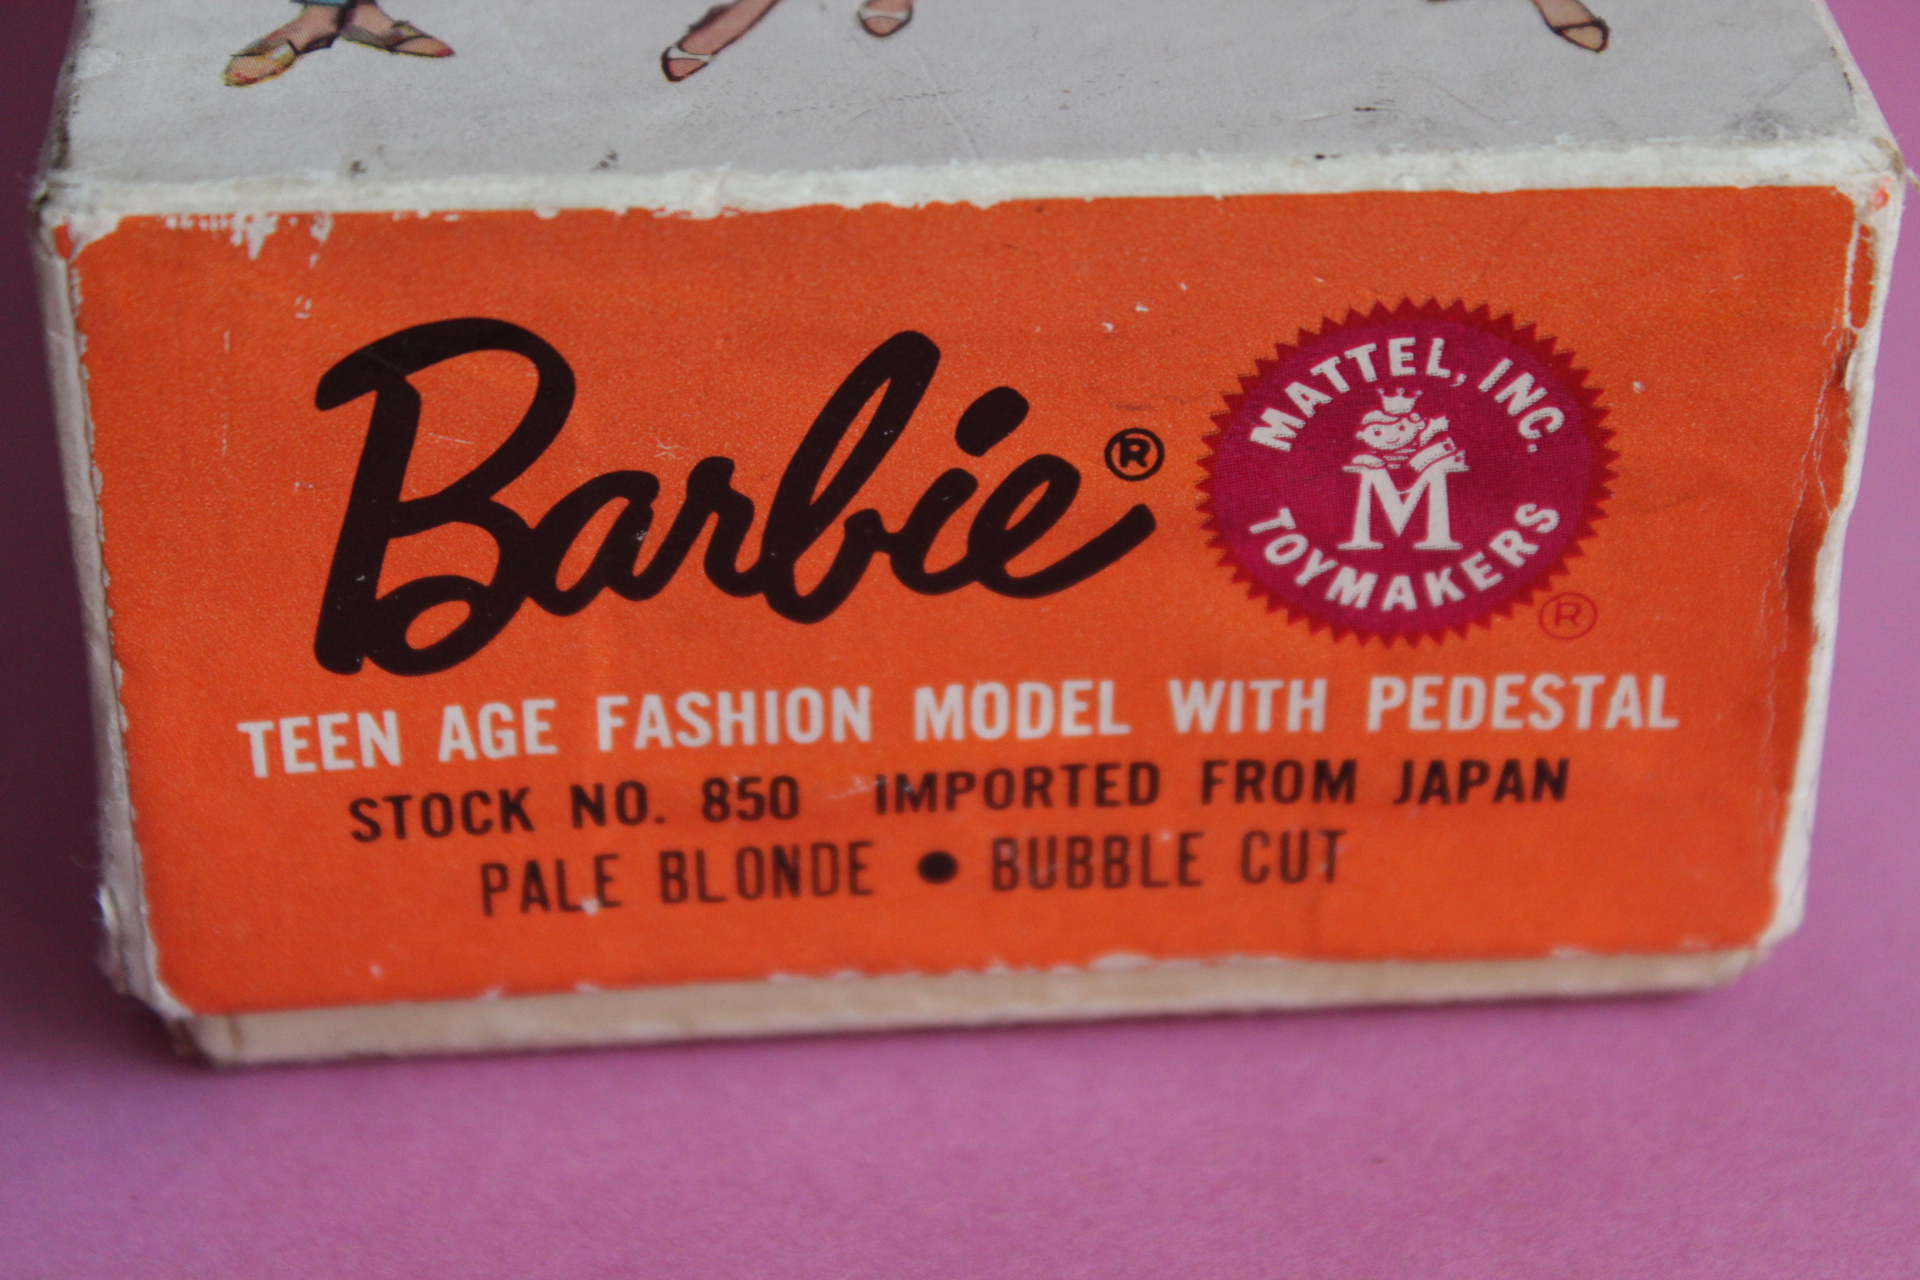 Vintage Barbie Bubblecut blonde 1964©1958